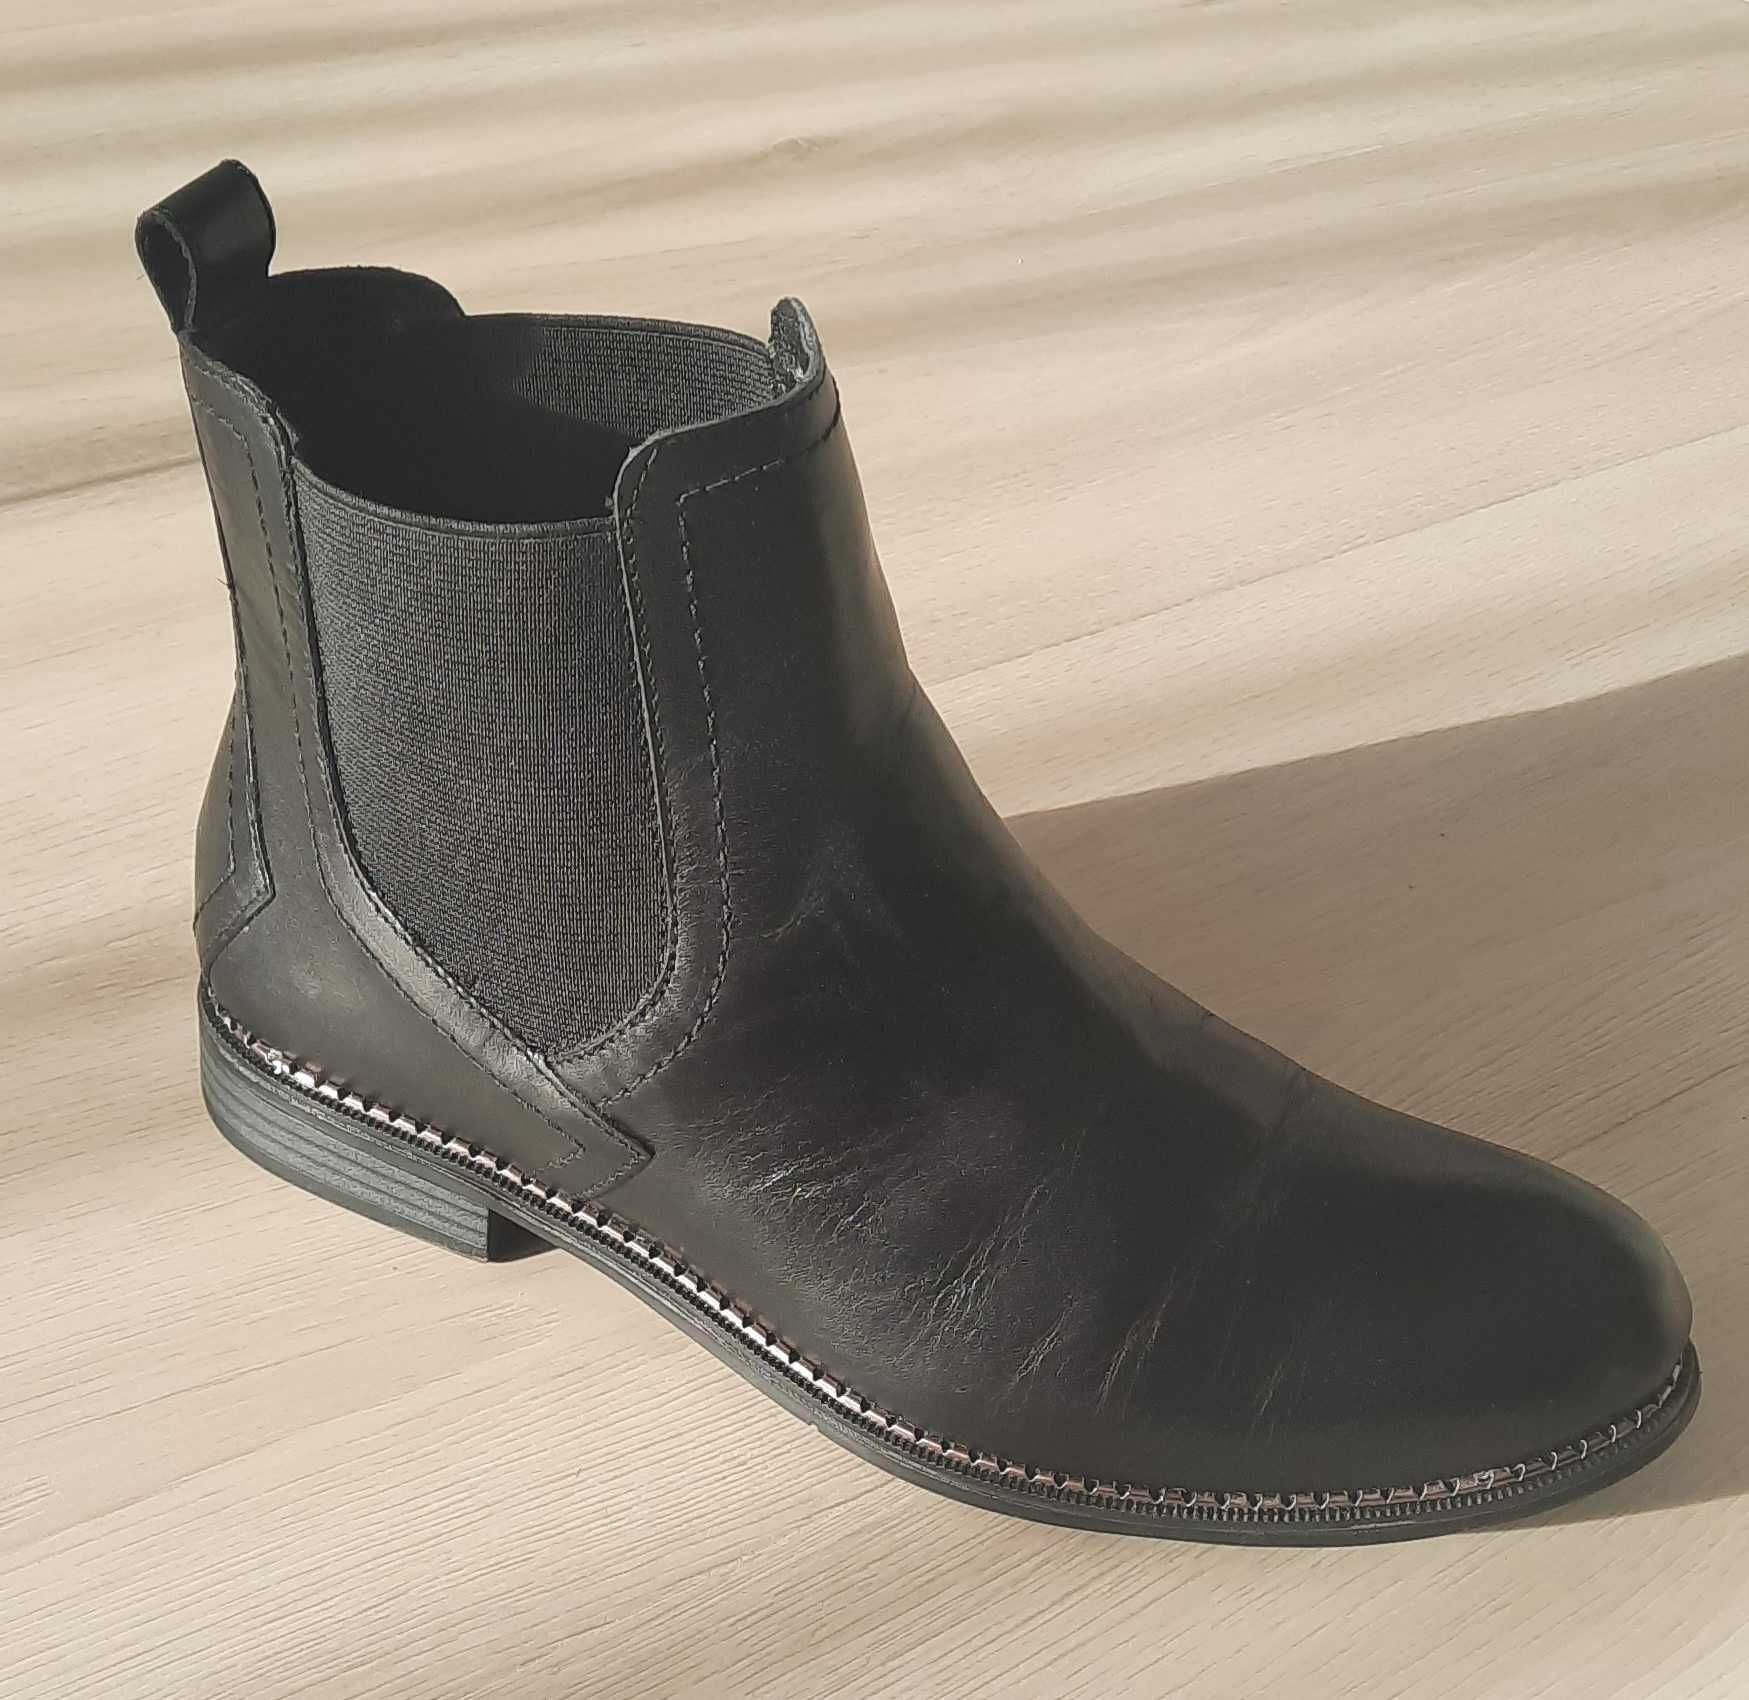 Buty botki damskie czarne Lasocki ARC-LINDA-14 rozmiar 39